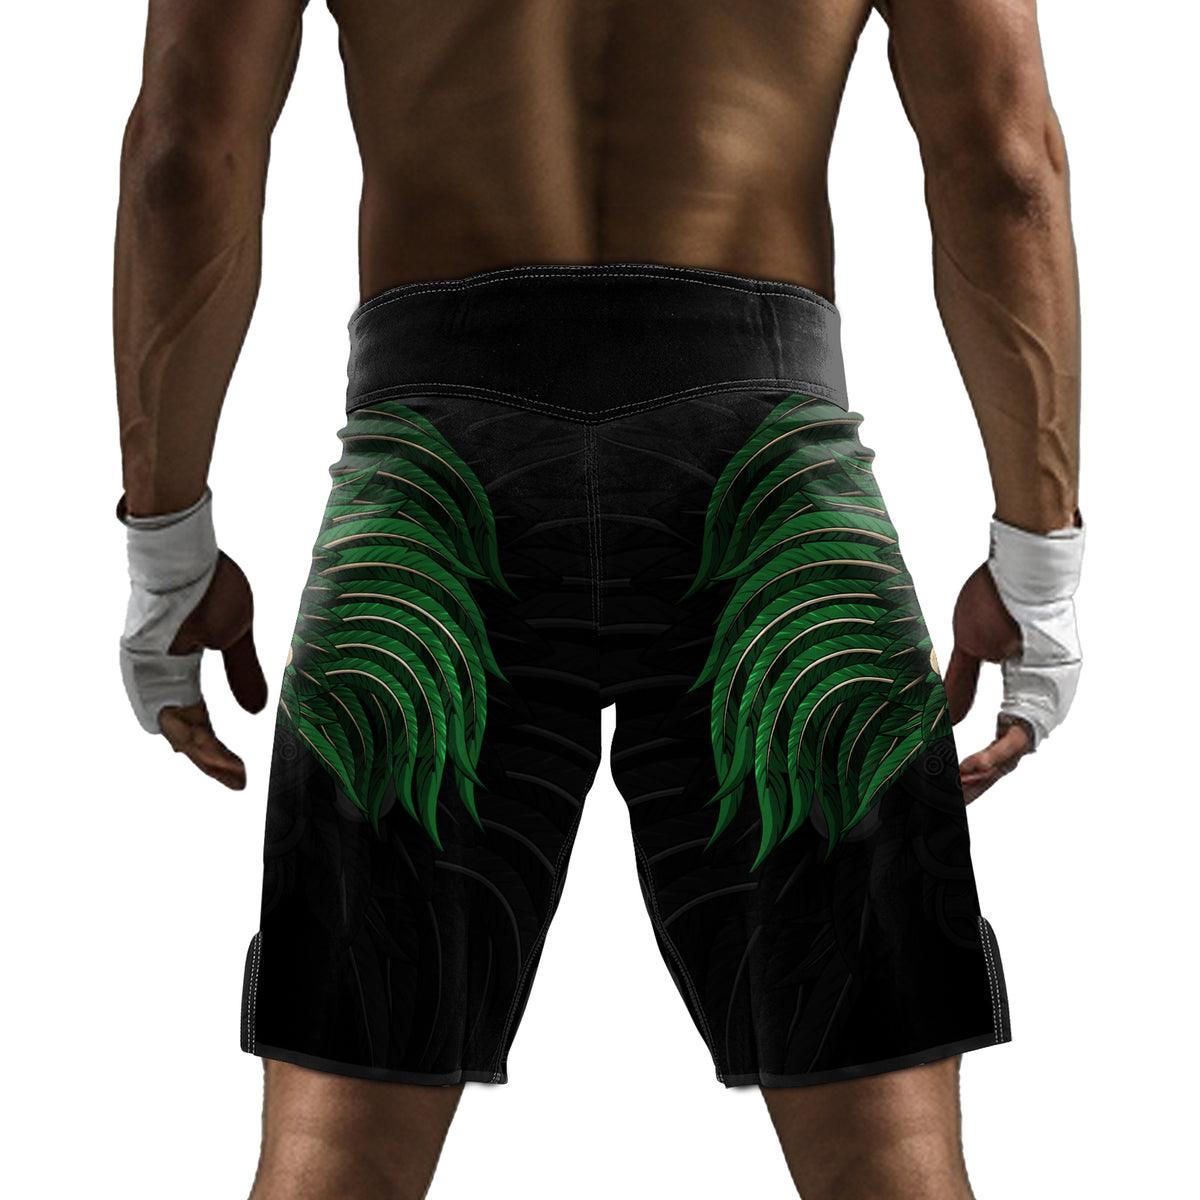 Rashninja Aztec Eagle Warrior Skull Men's Fight Shorts - Rashninja LLC